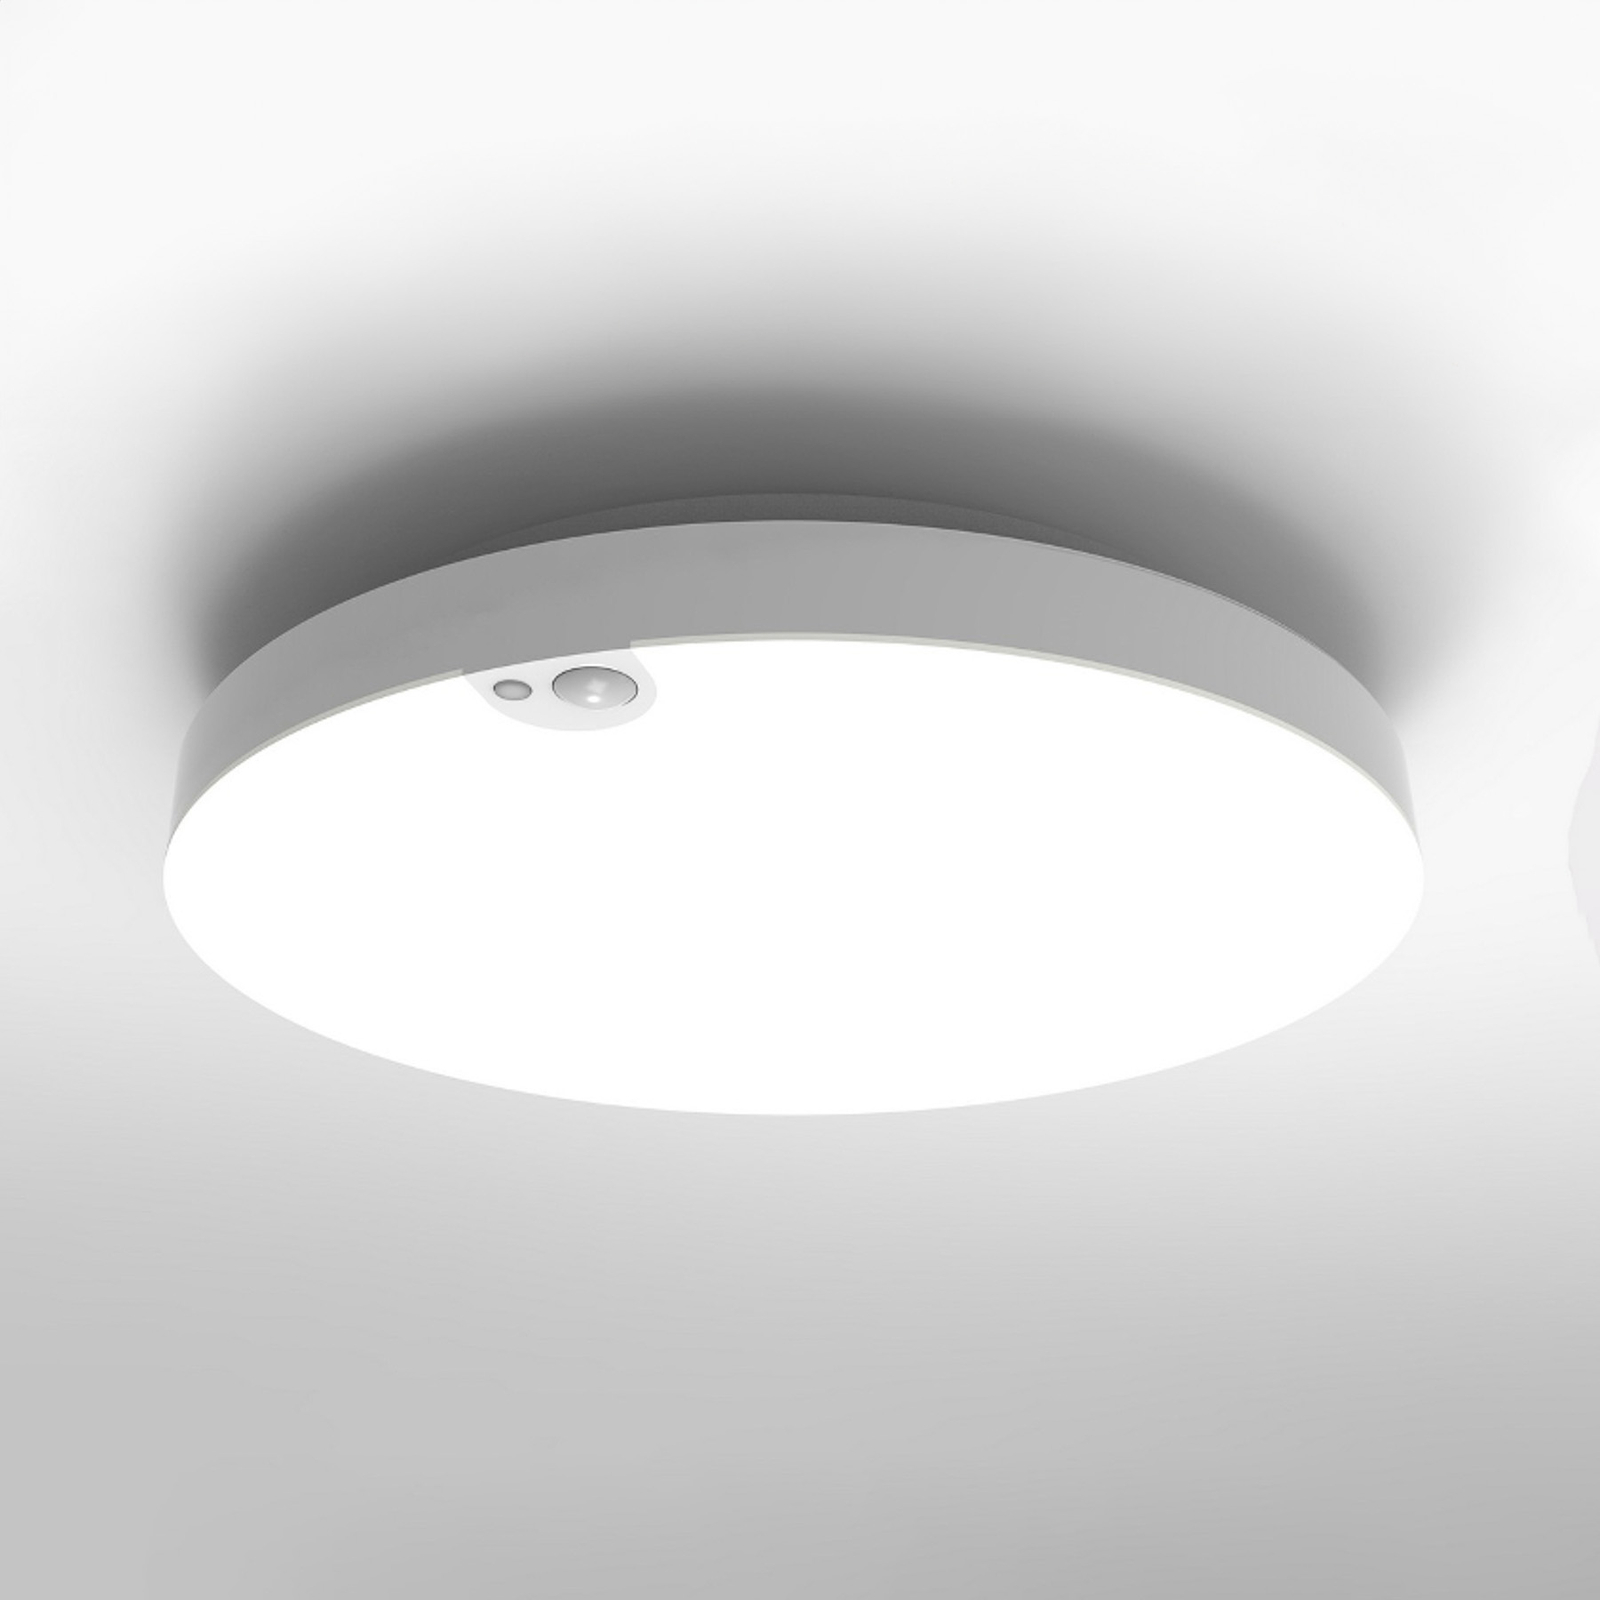 LED ceiling light Allrounder 2, 3000K, with sensor